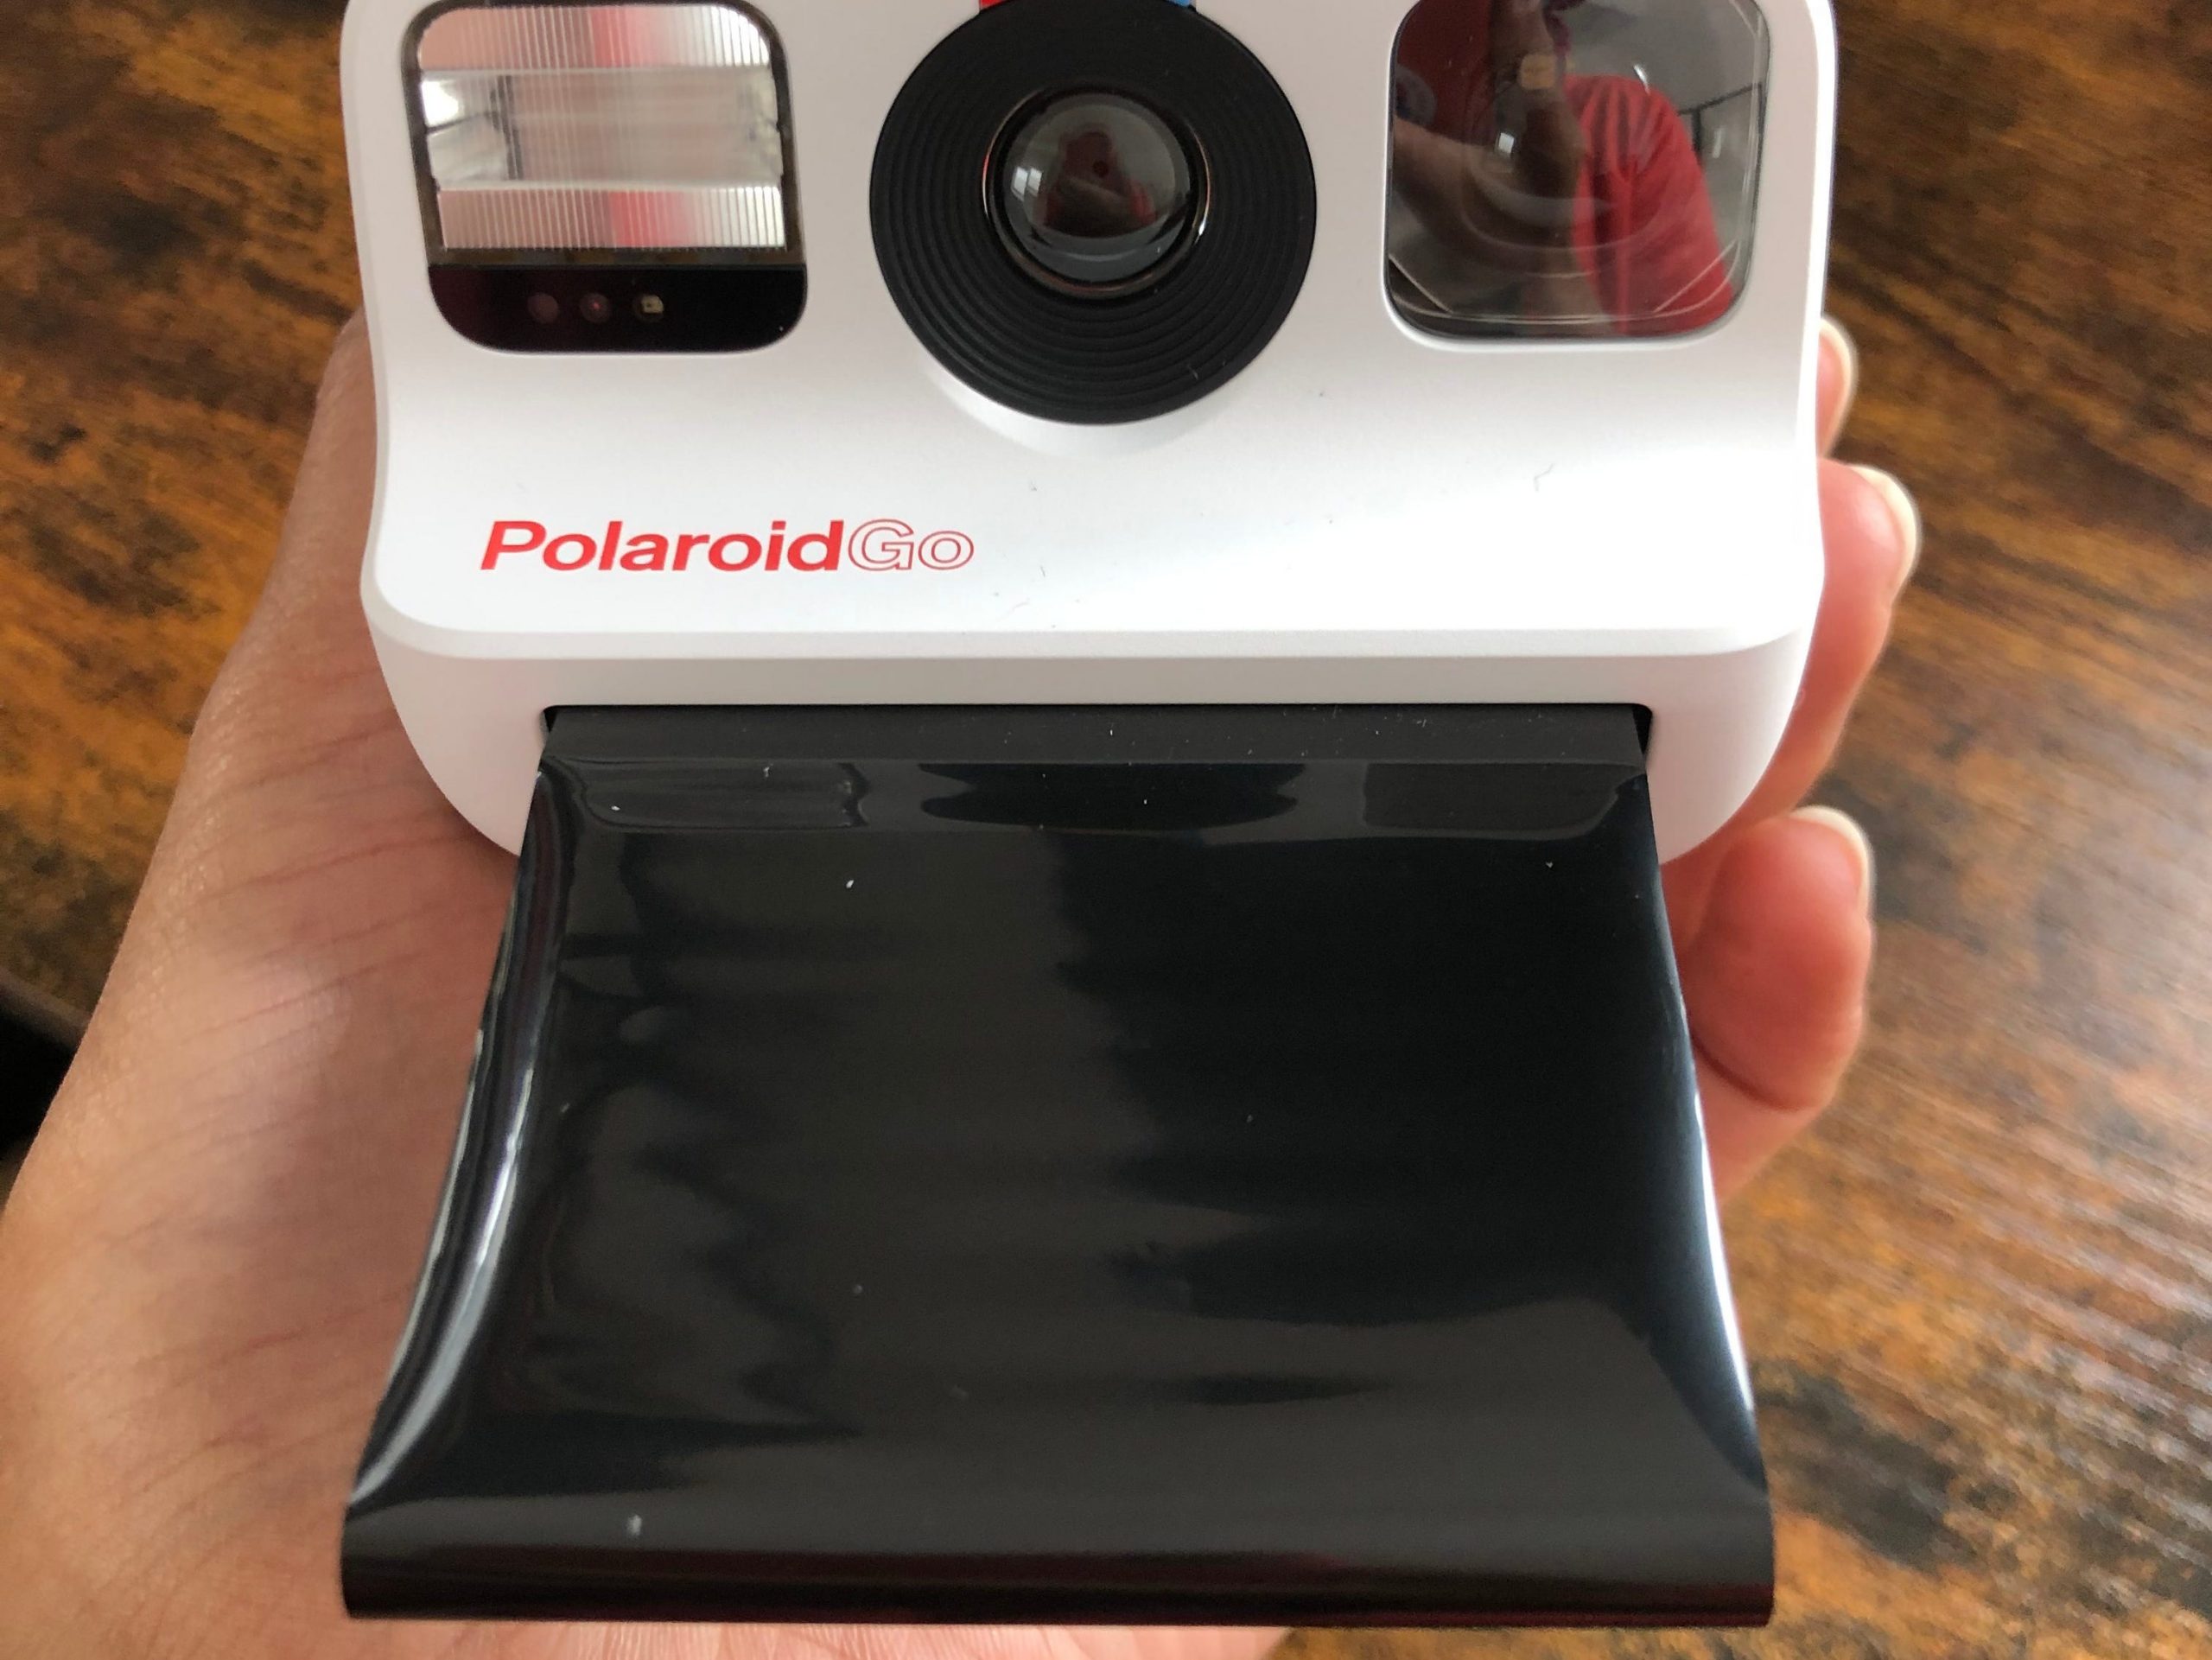 The Polaroid Go